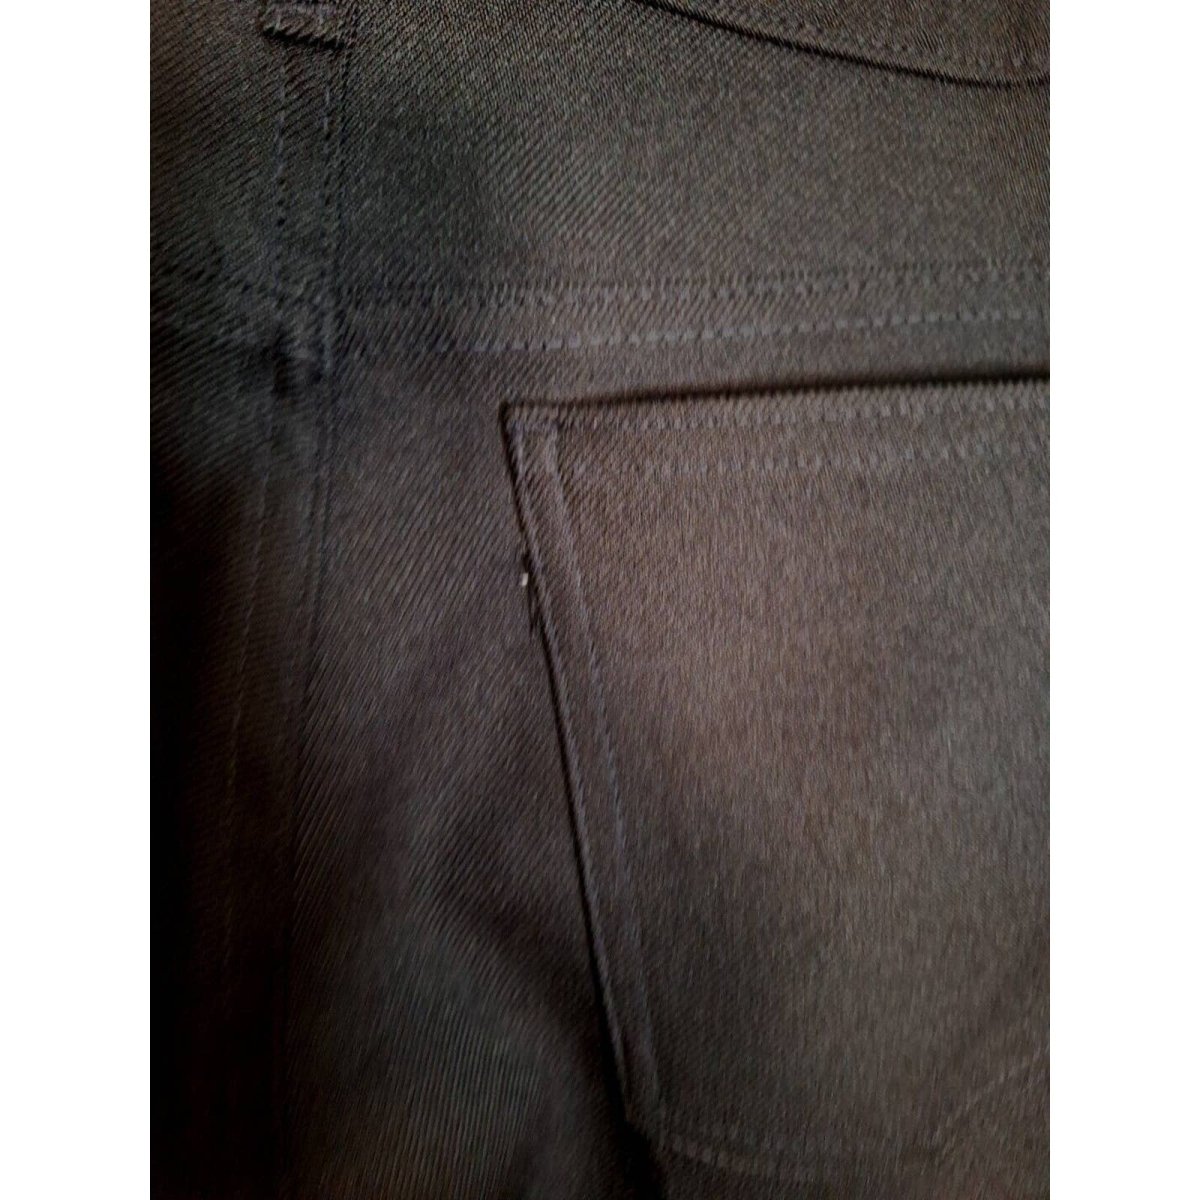 Vintage Levi's 517 Black Dacron Boot Cut Pants Men Unisex Size 36x32 - themallvintage The Mall Vintage